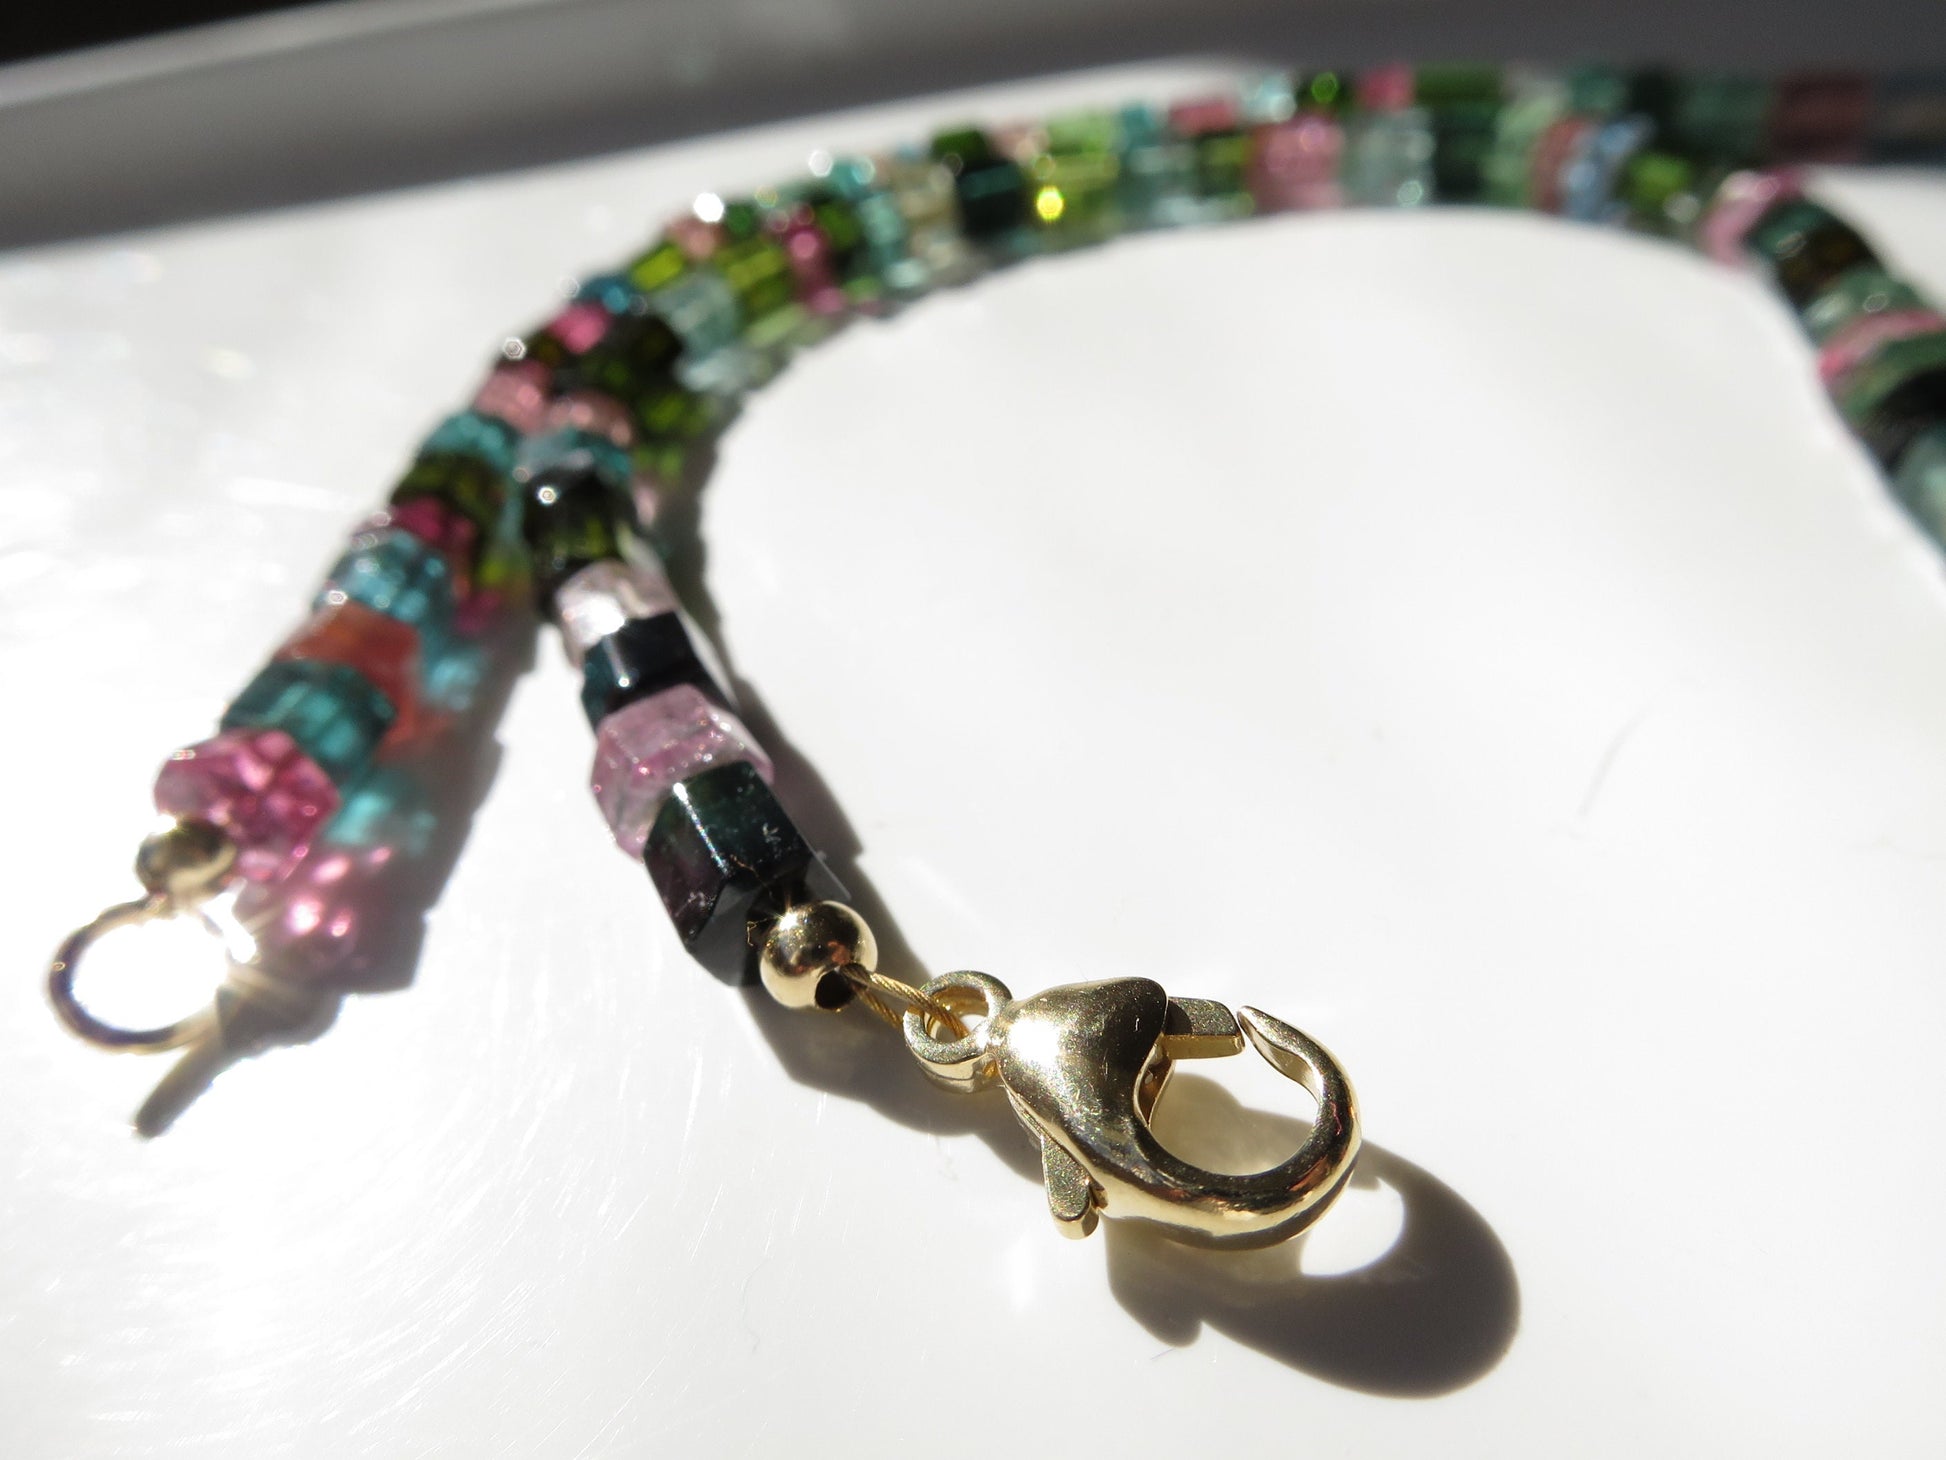 Multicolor Turmalin Halskette blau, grün, rosa klare natürliche Edelstein Verschluss 9Karat Gold Natur unbehandelt bunt